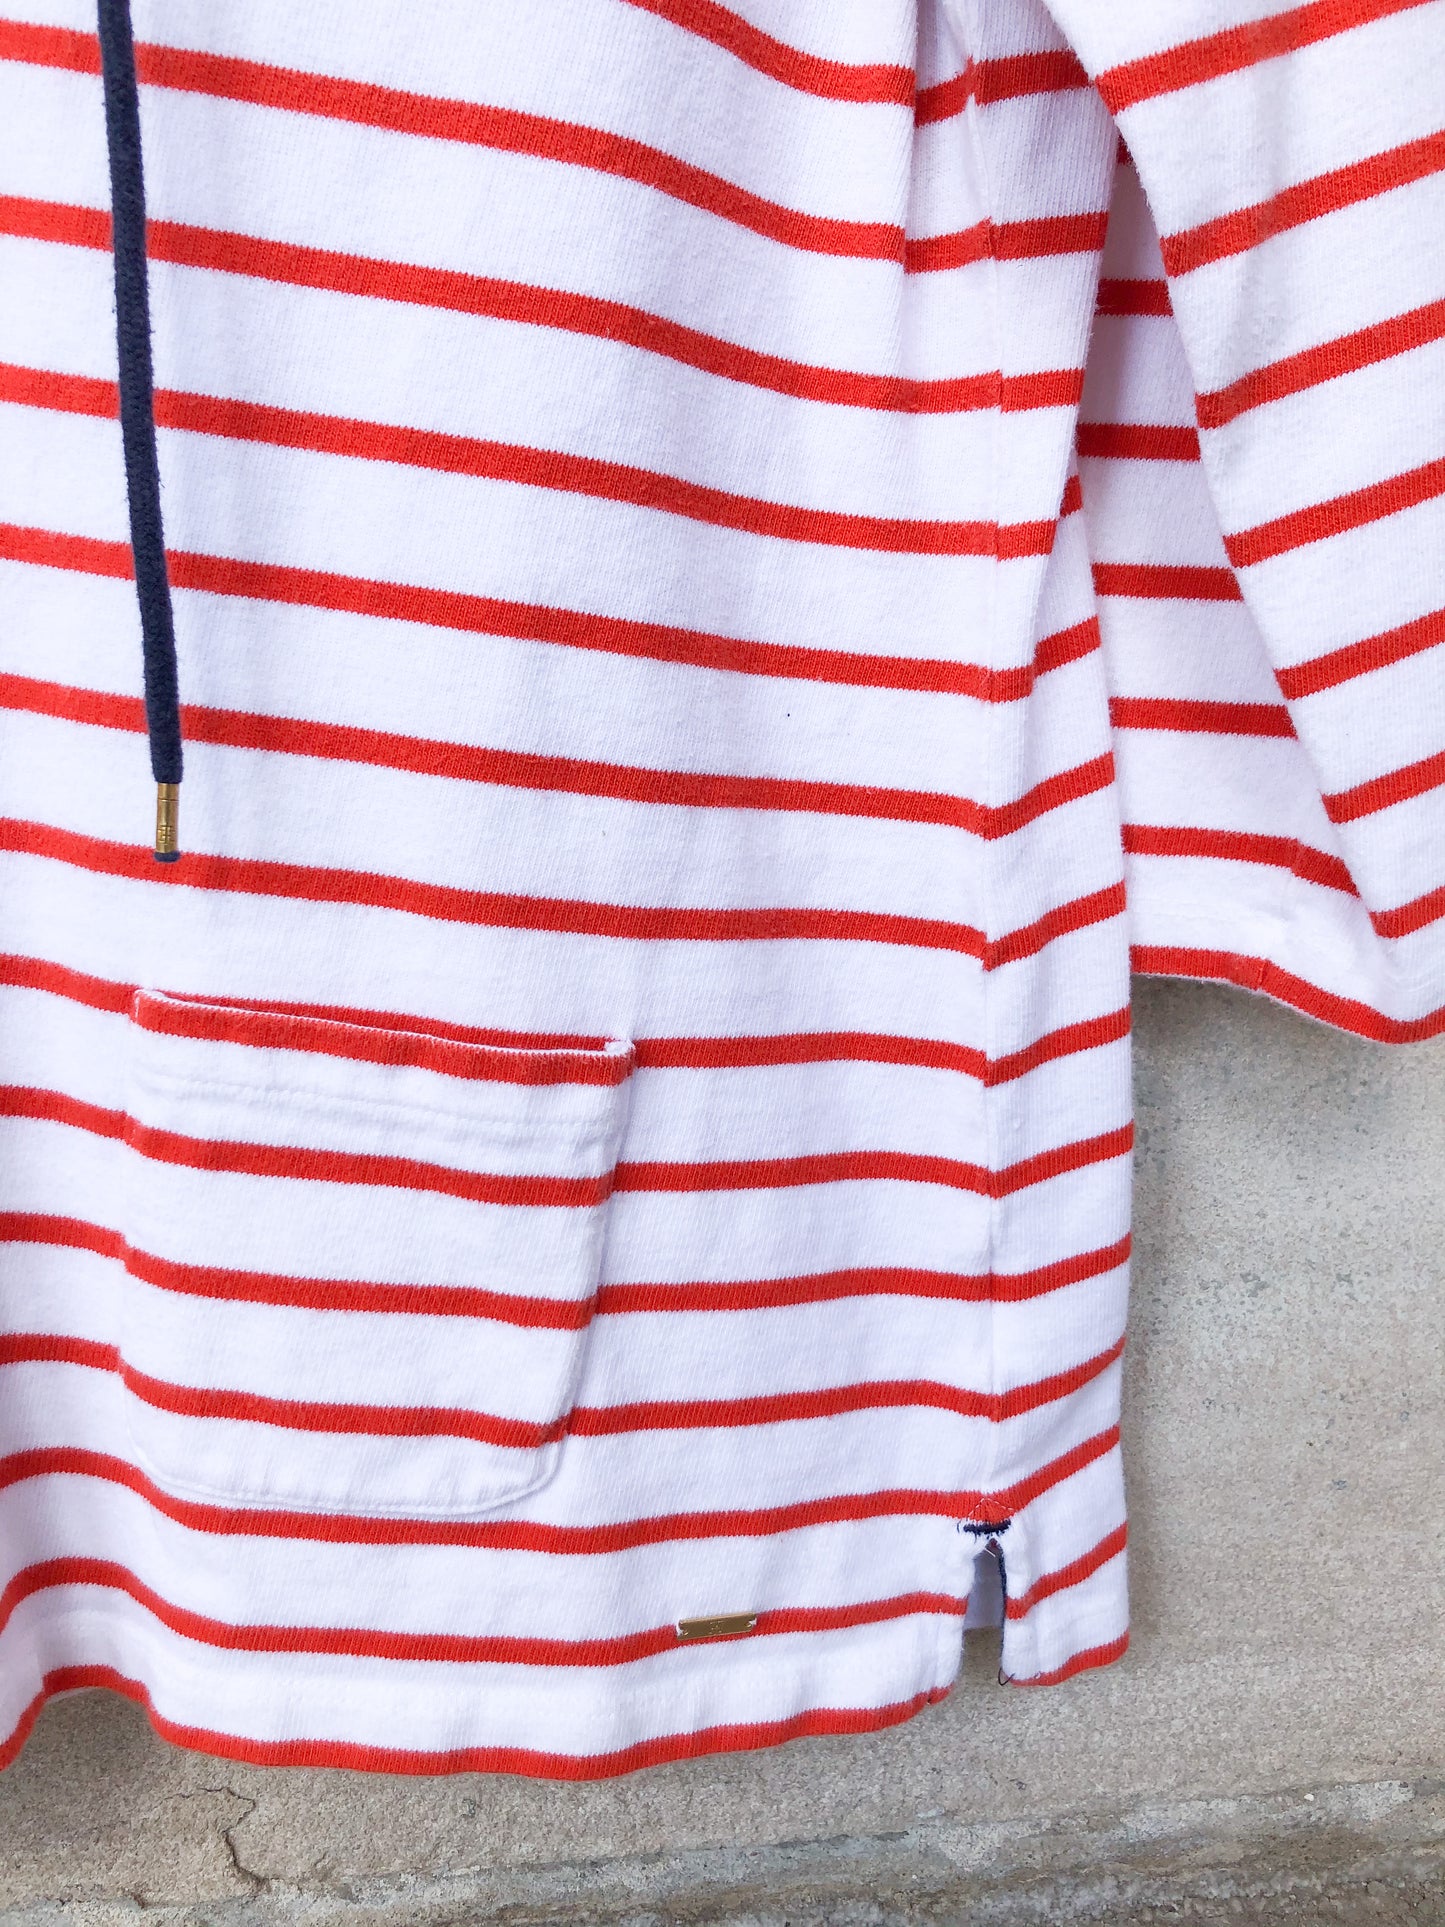 Tommy Hilfiger Orange Stripe Lace Up 100% Cotton Top - M/L